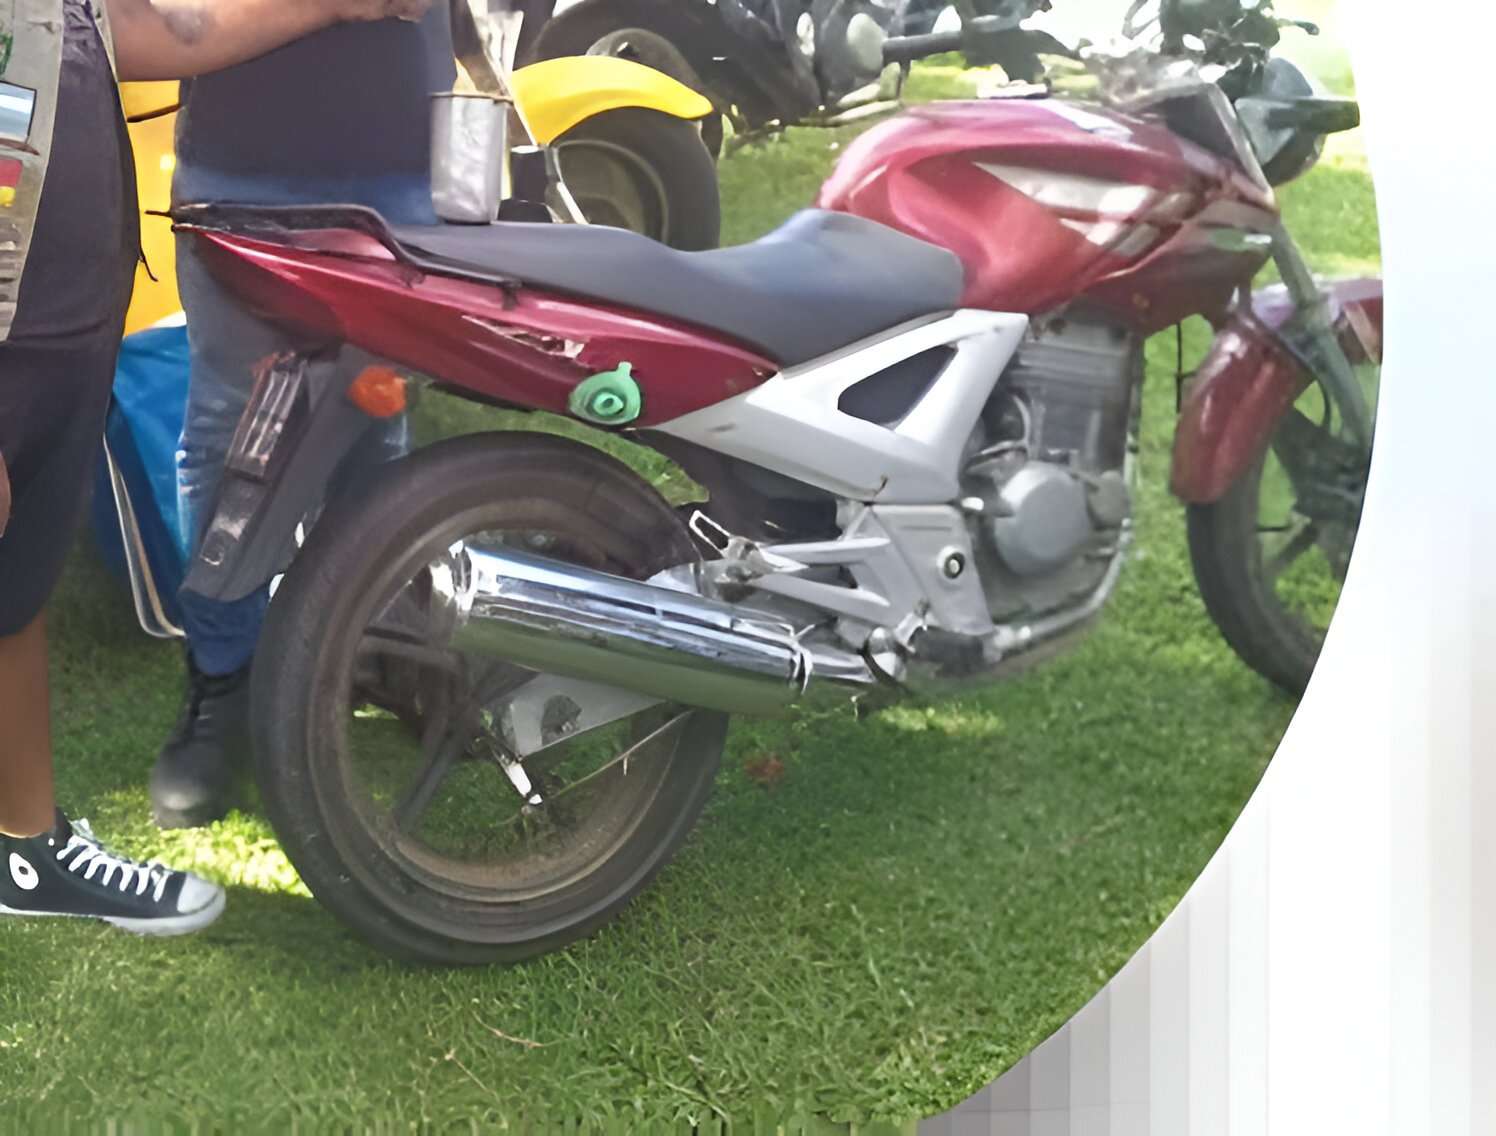 Encontraron la moto Honda Twister robada en calle Mitre al 2300